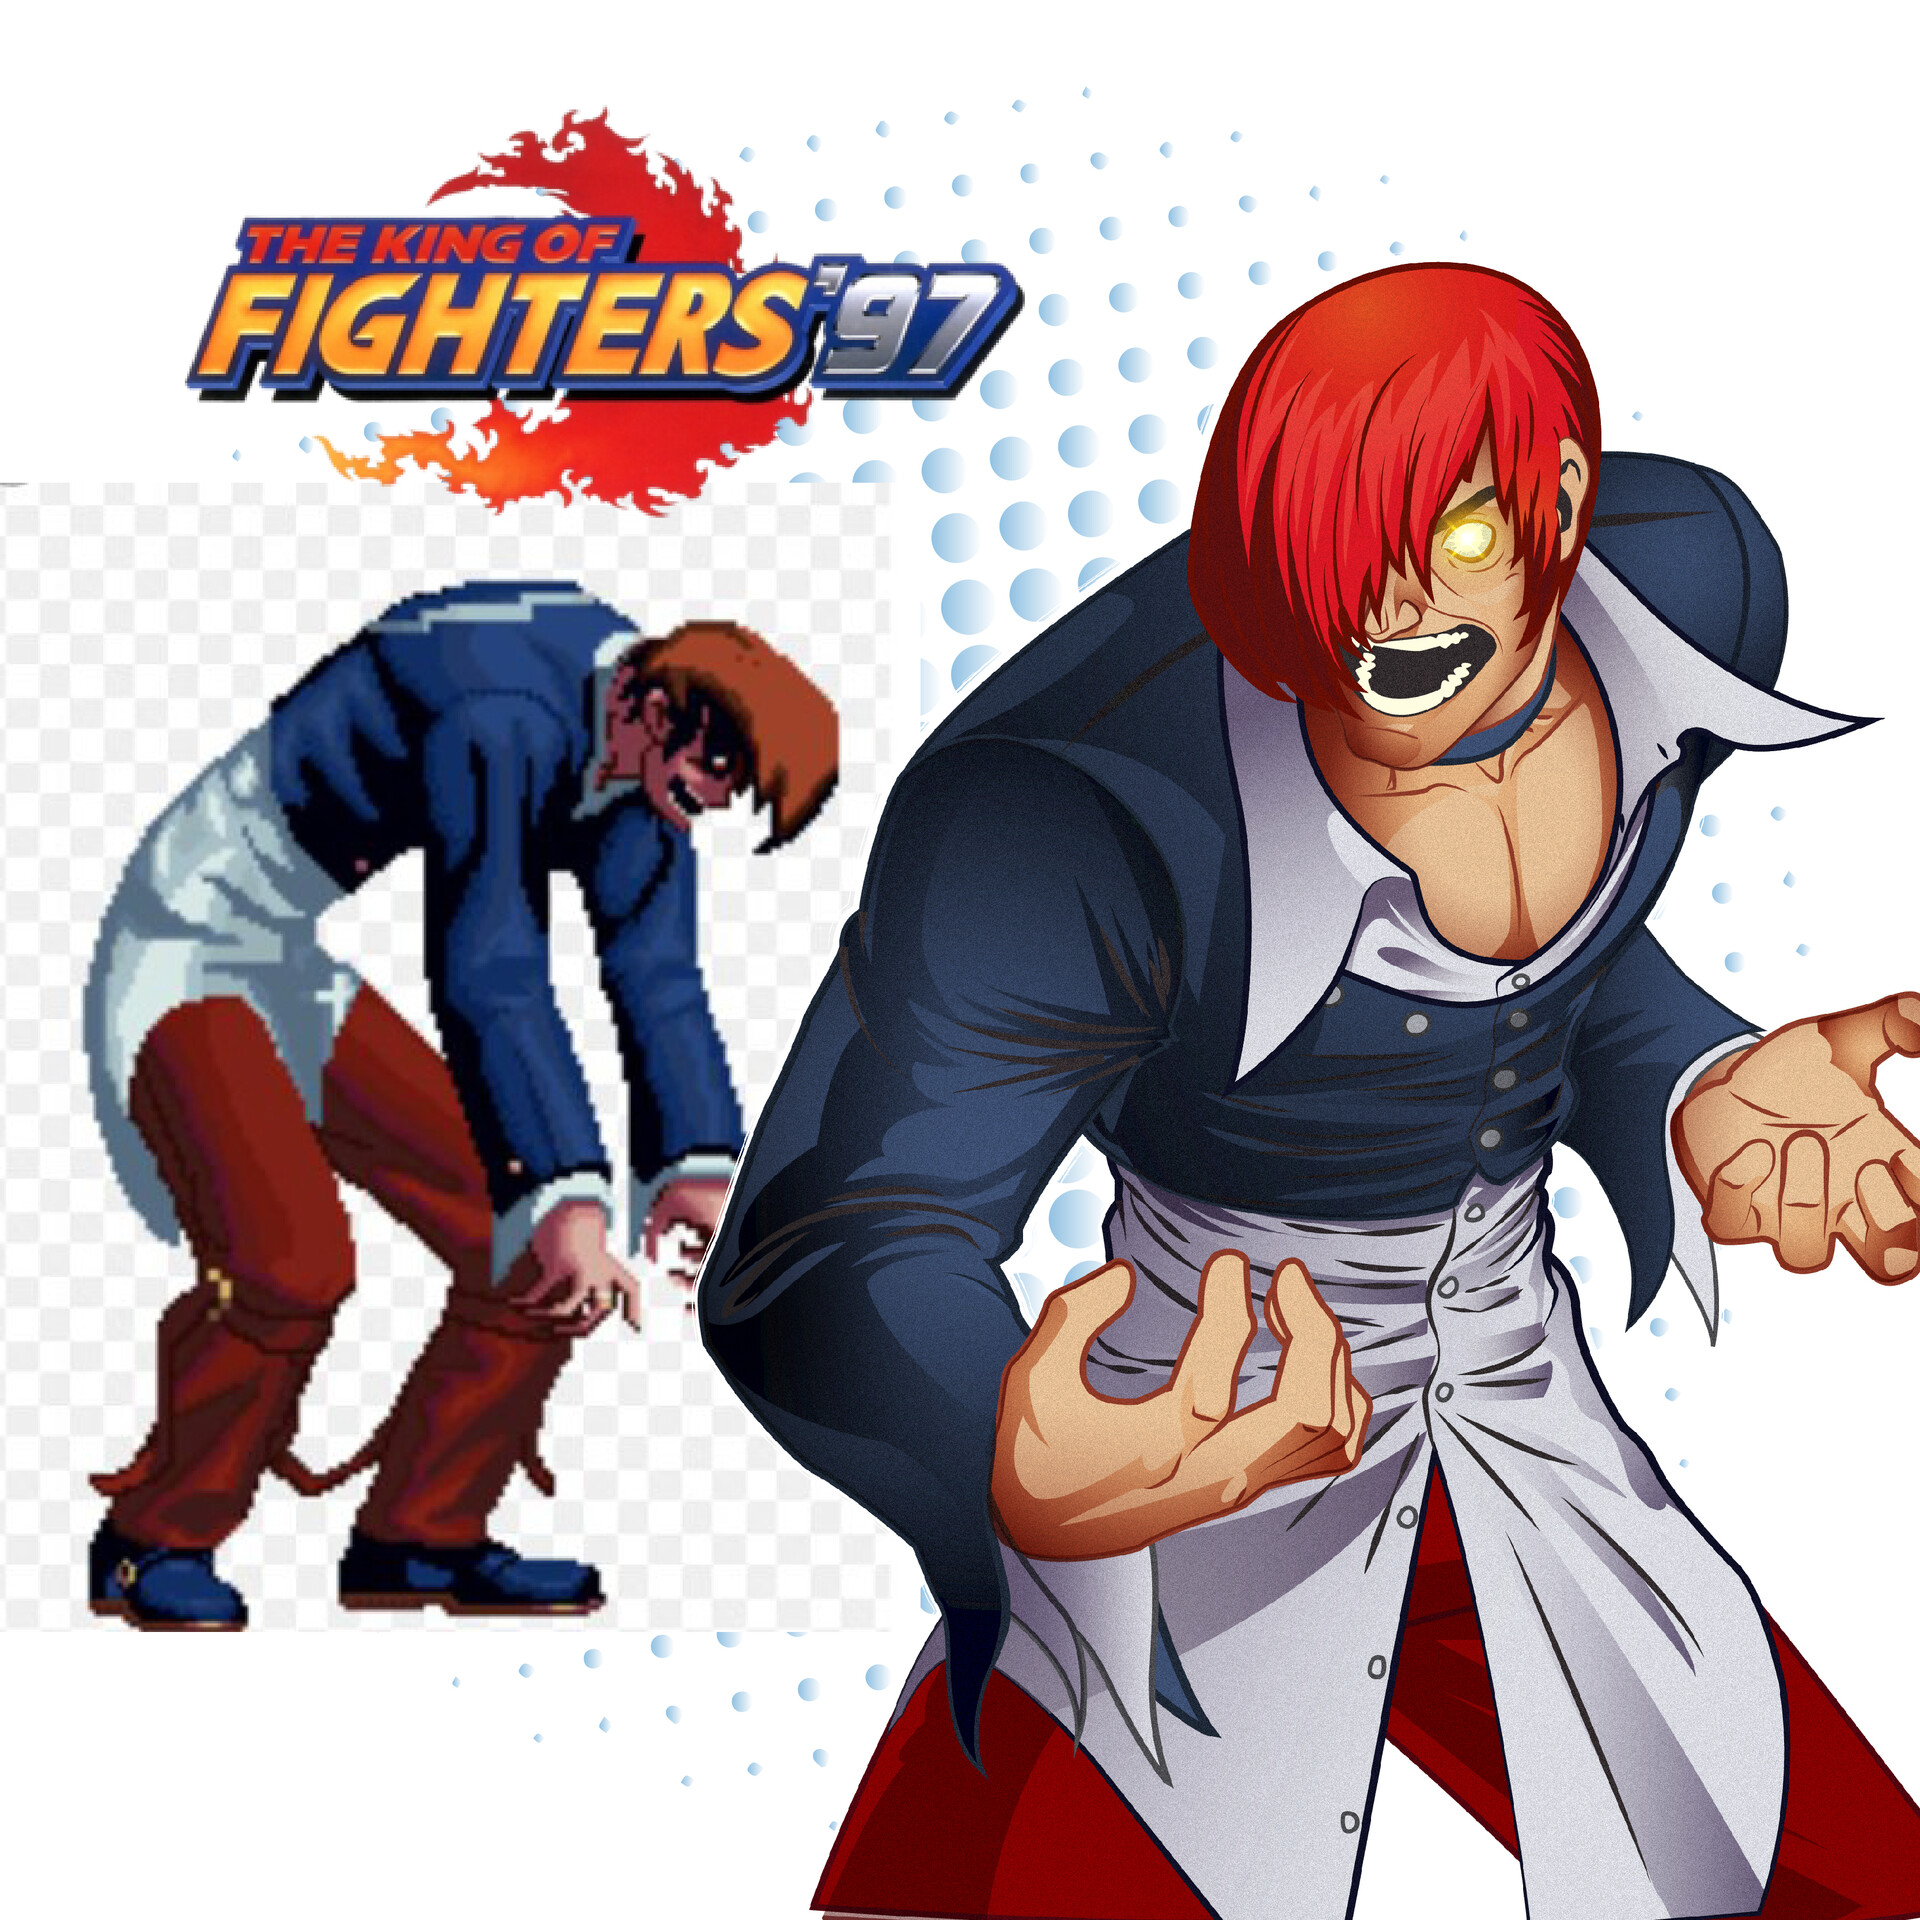 ArtStation - The King of Fighters 97 Fan Art